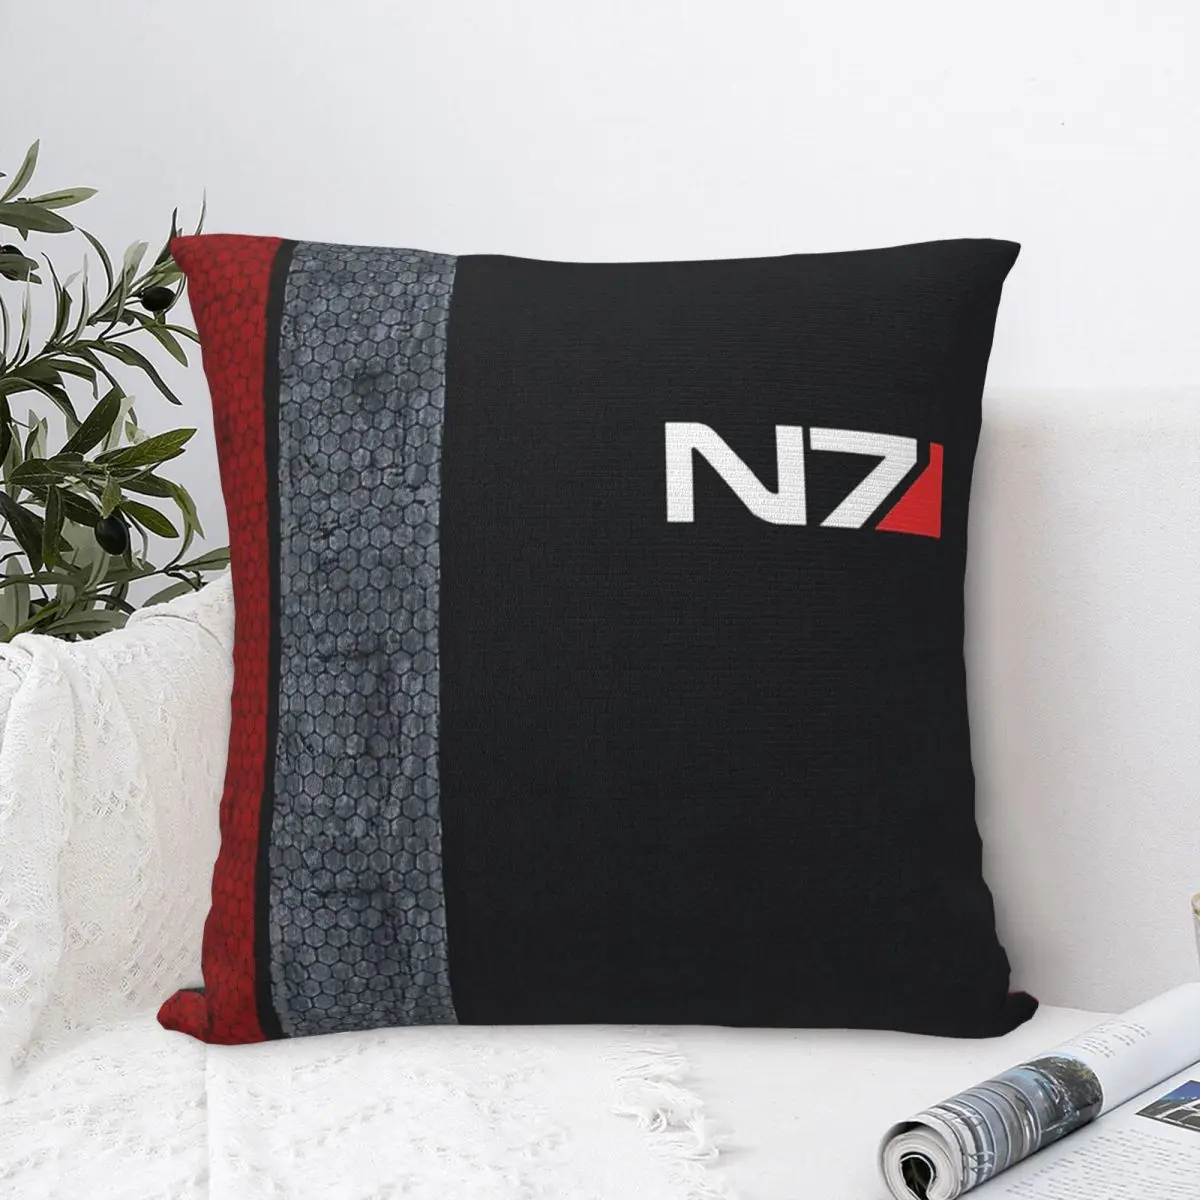 

N7 Art Cojines Throw Pillow Case Mass Effect Cushion Home Sofa Chair Print Decorative Coussin